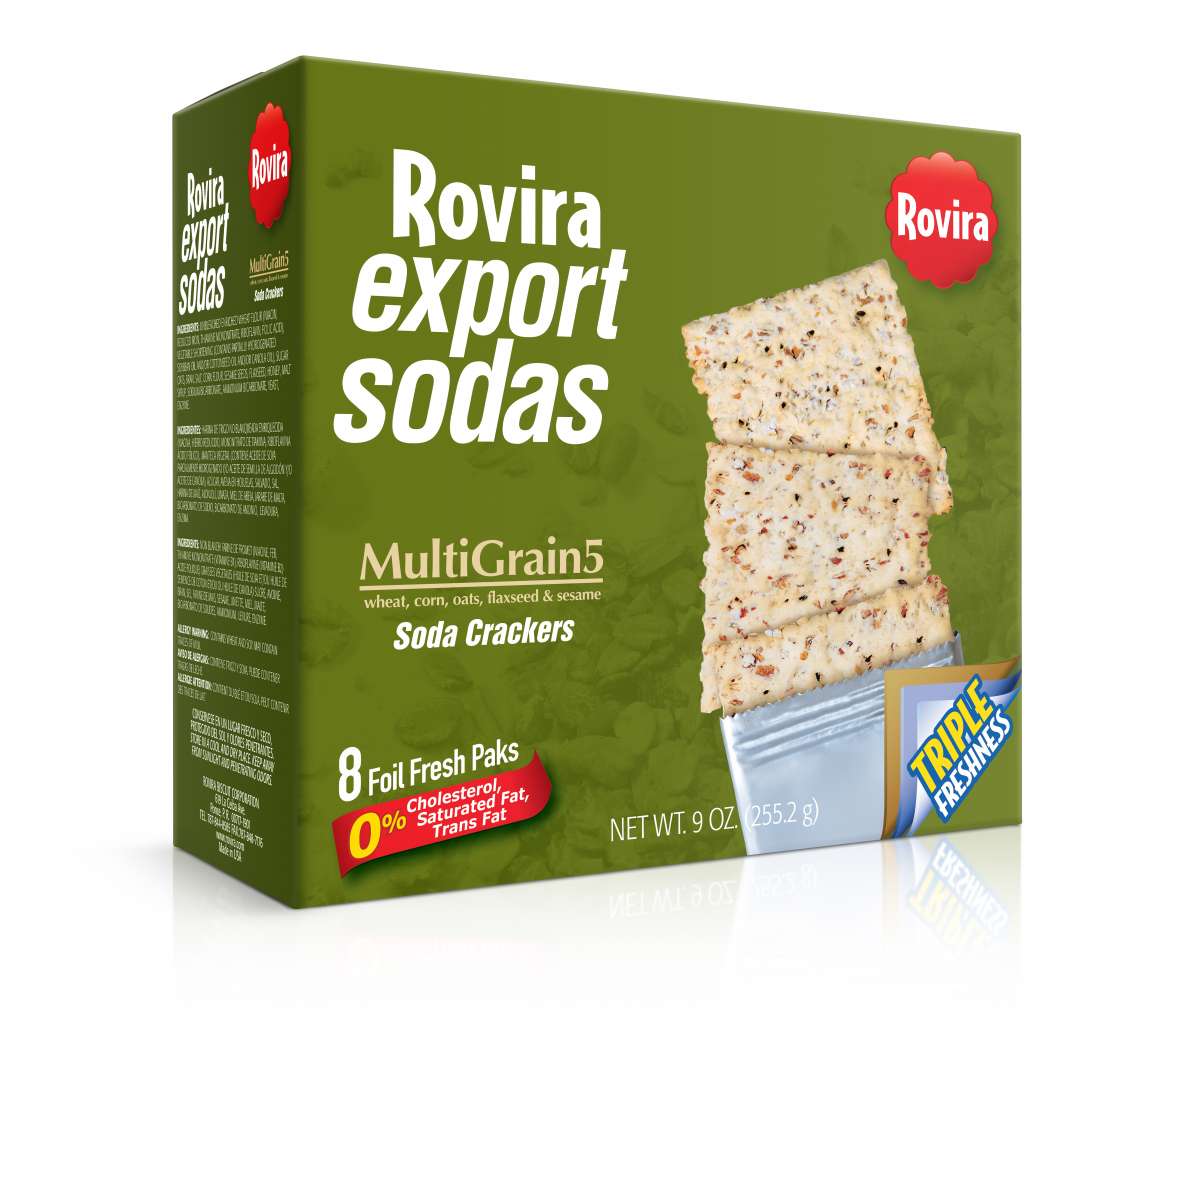 Rovira - Rovira Export Soda (MultiGrain5)